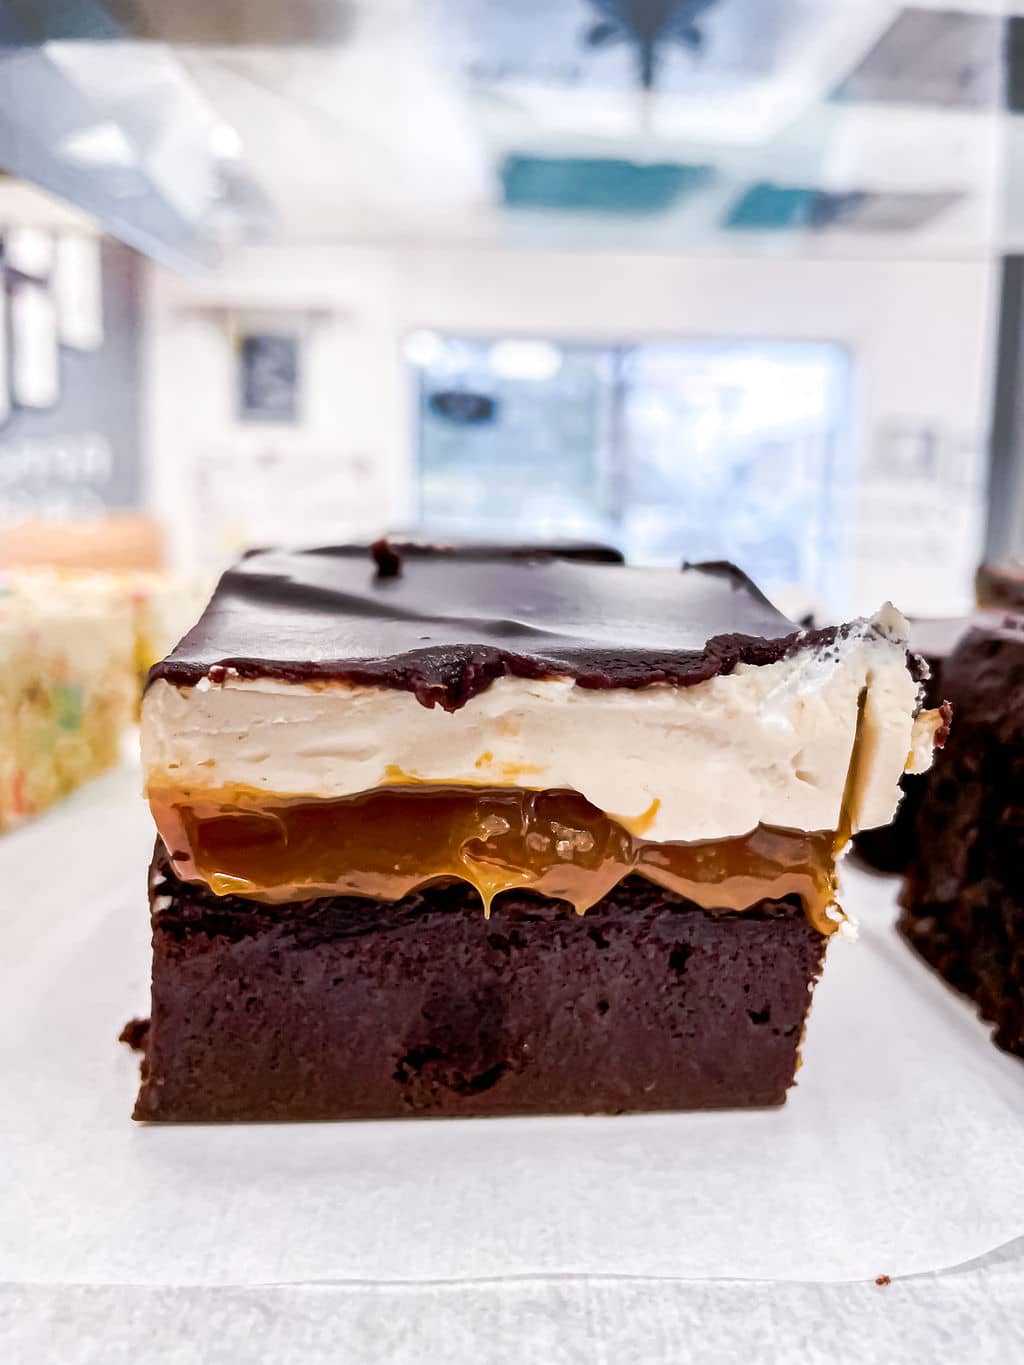 Brownies and bars by Sugar Mama's Bake Shoppe